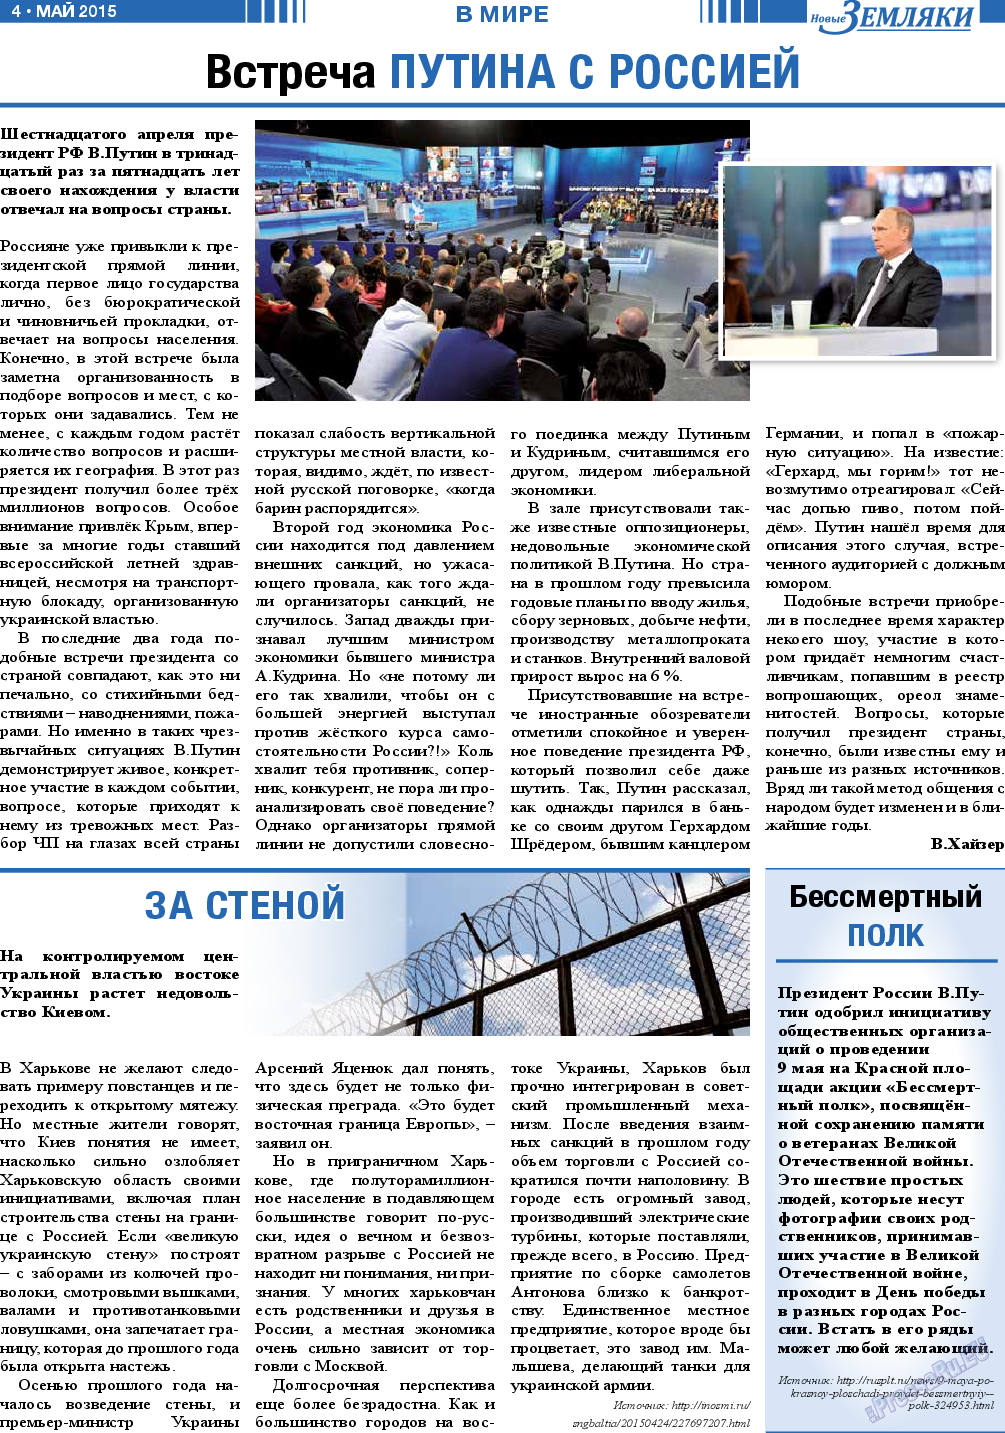 Новые Земляки (газета). 2015 год, номер 5, стр. 4